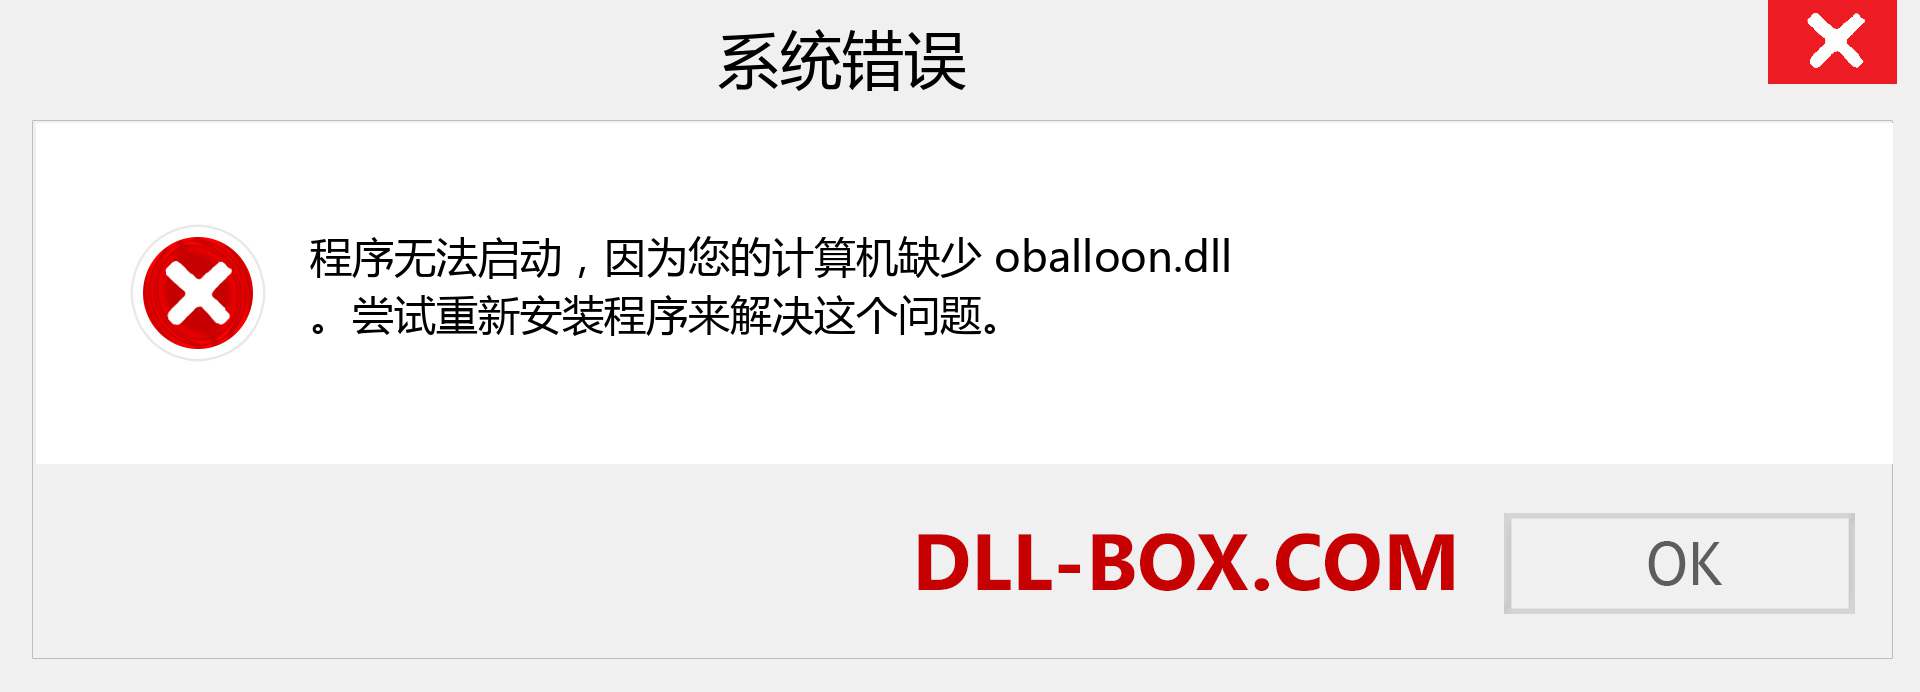 oballoon.dll 文件丢失？。 适用于 Windows 7、8、10 的下载 - 修复 Windows、照片、图像上的 oballoon dll 丢失错误